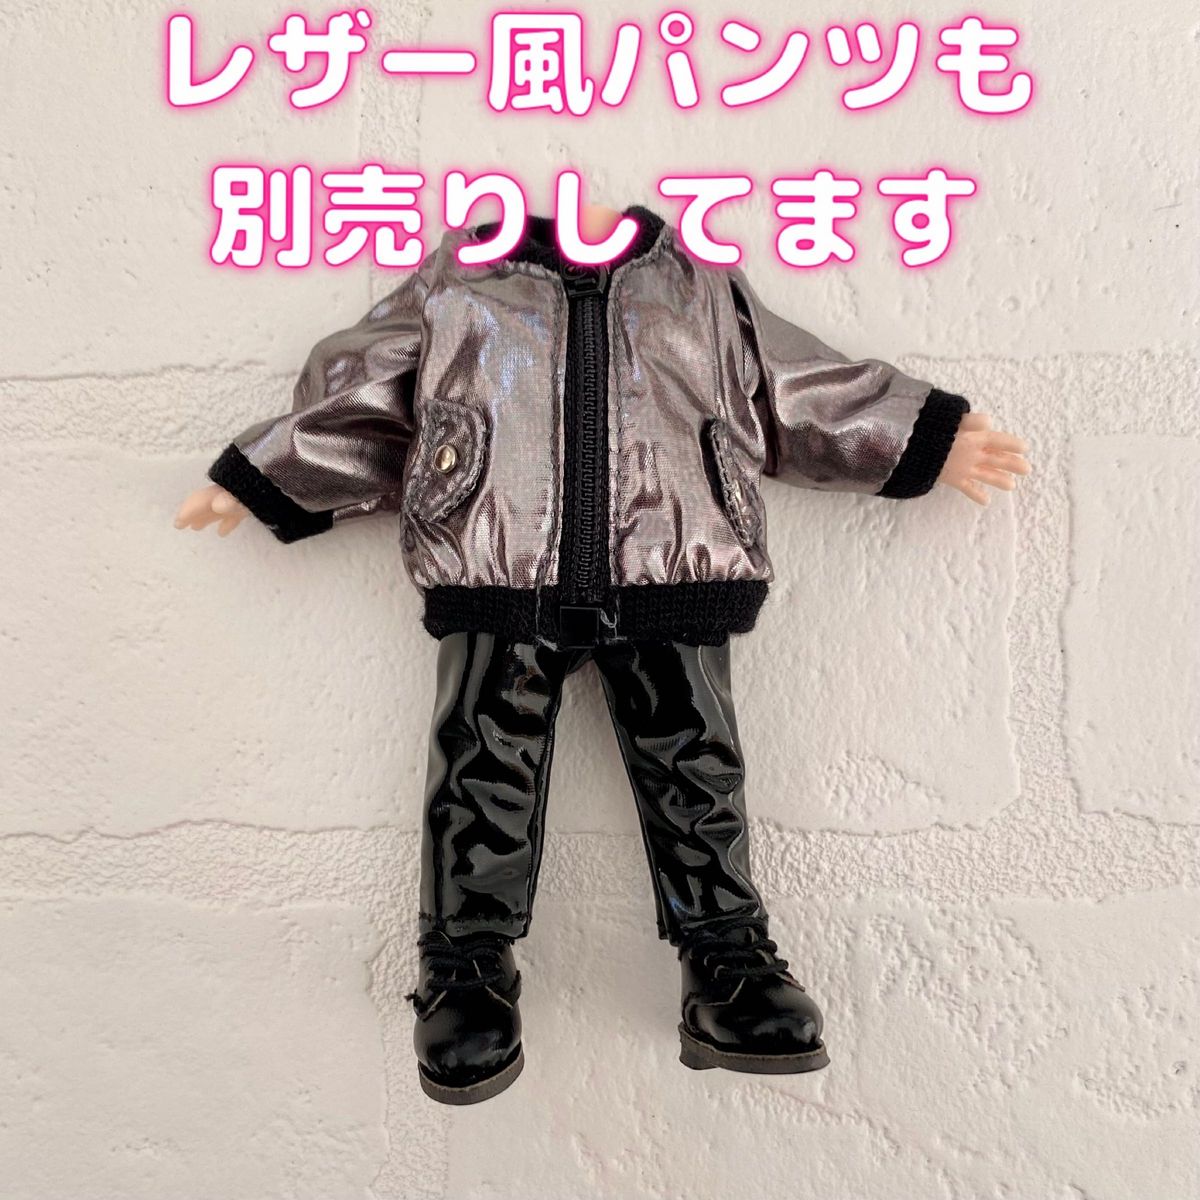 オビツ11 ねんどろいど どーる ジャケット 黒 ブルゾン 人形 服 セリア ドール ピコニーモ P コート 1/12 ブラック